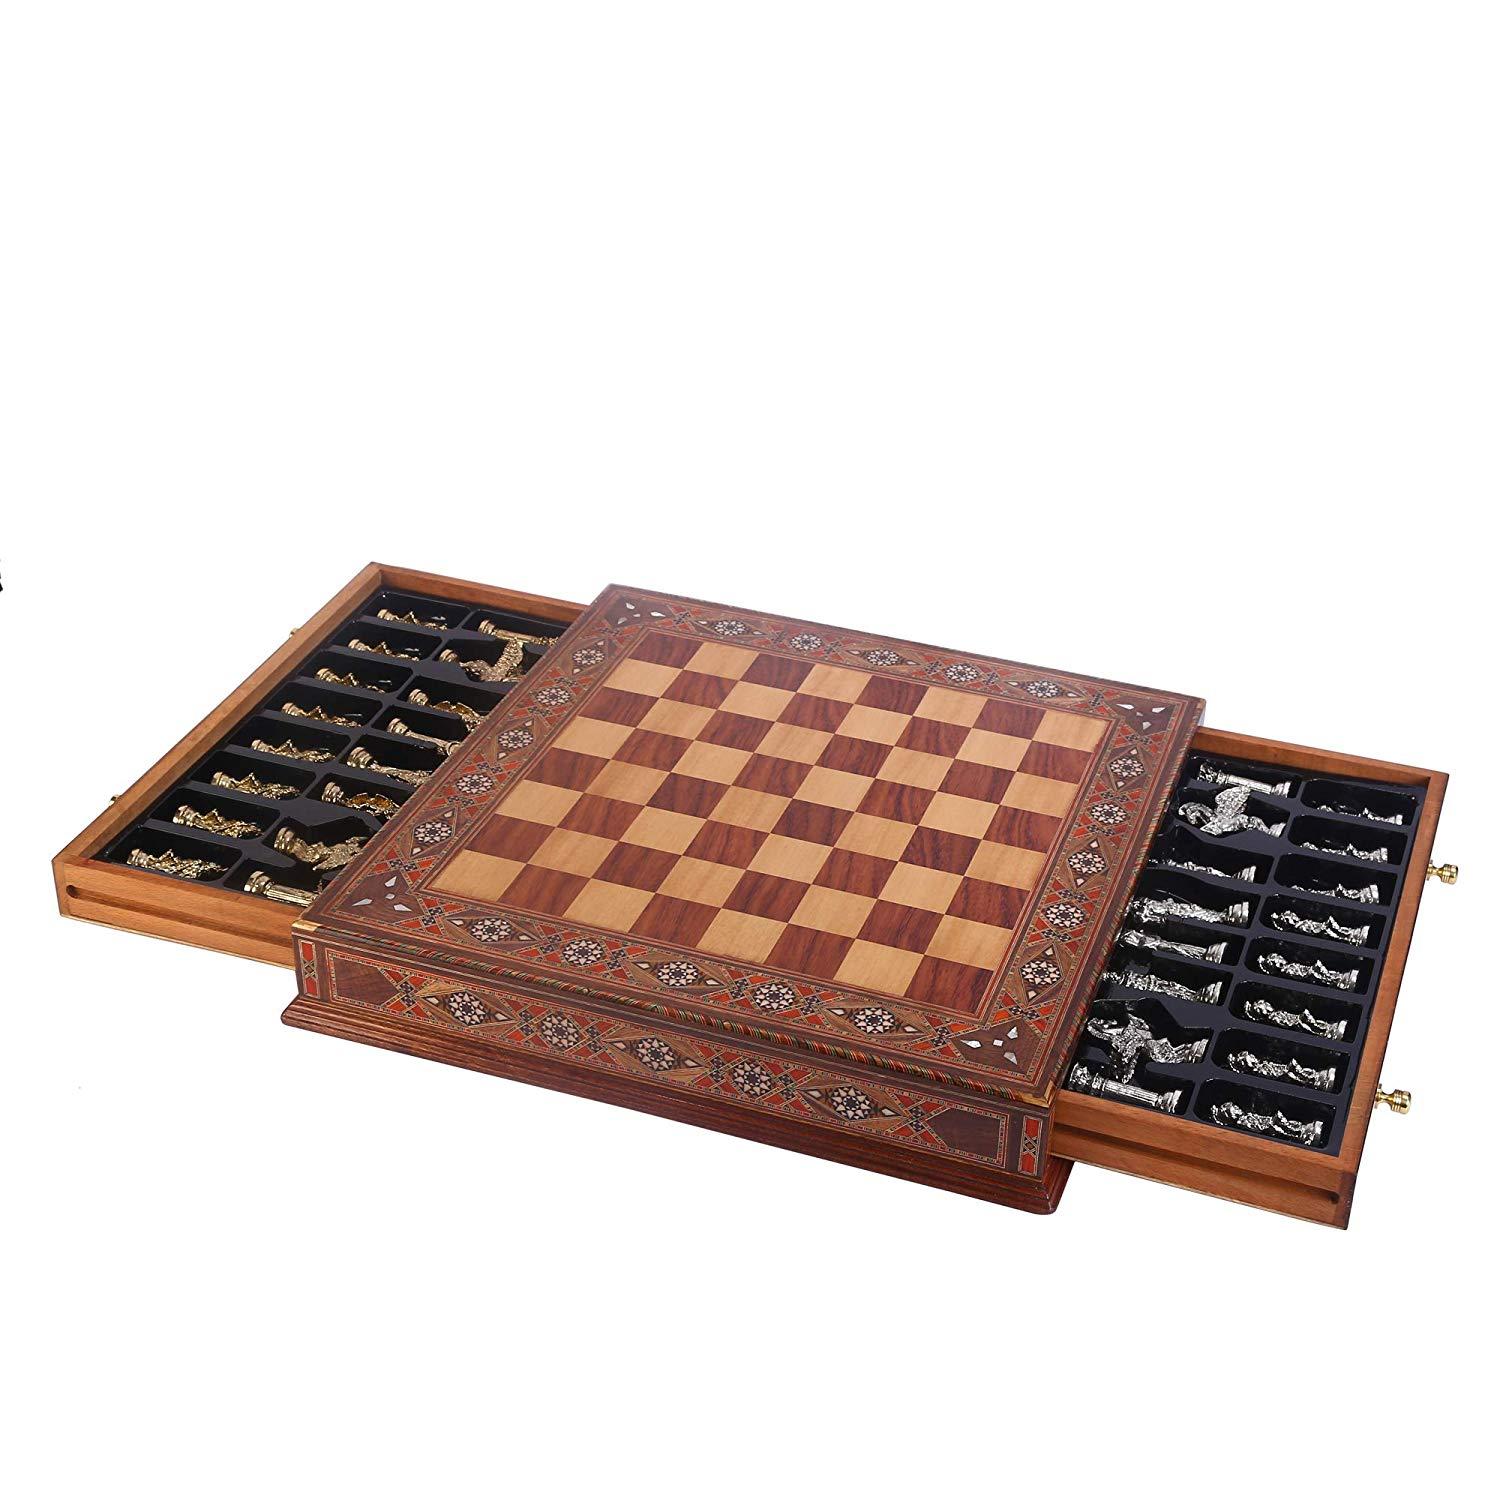 Изображение товара: Металлический Шахматный набор, римские фигурки, предметы ручной работы, шахматная доска из натурального массива дерева, оригинальный жемчуг на доске, хранение внутри короля 10 см